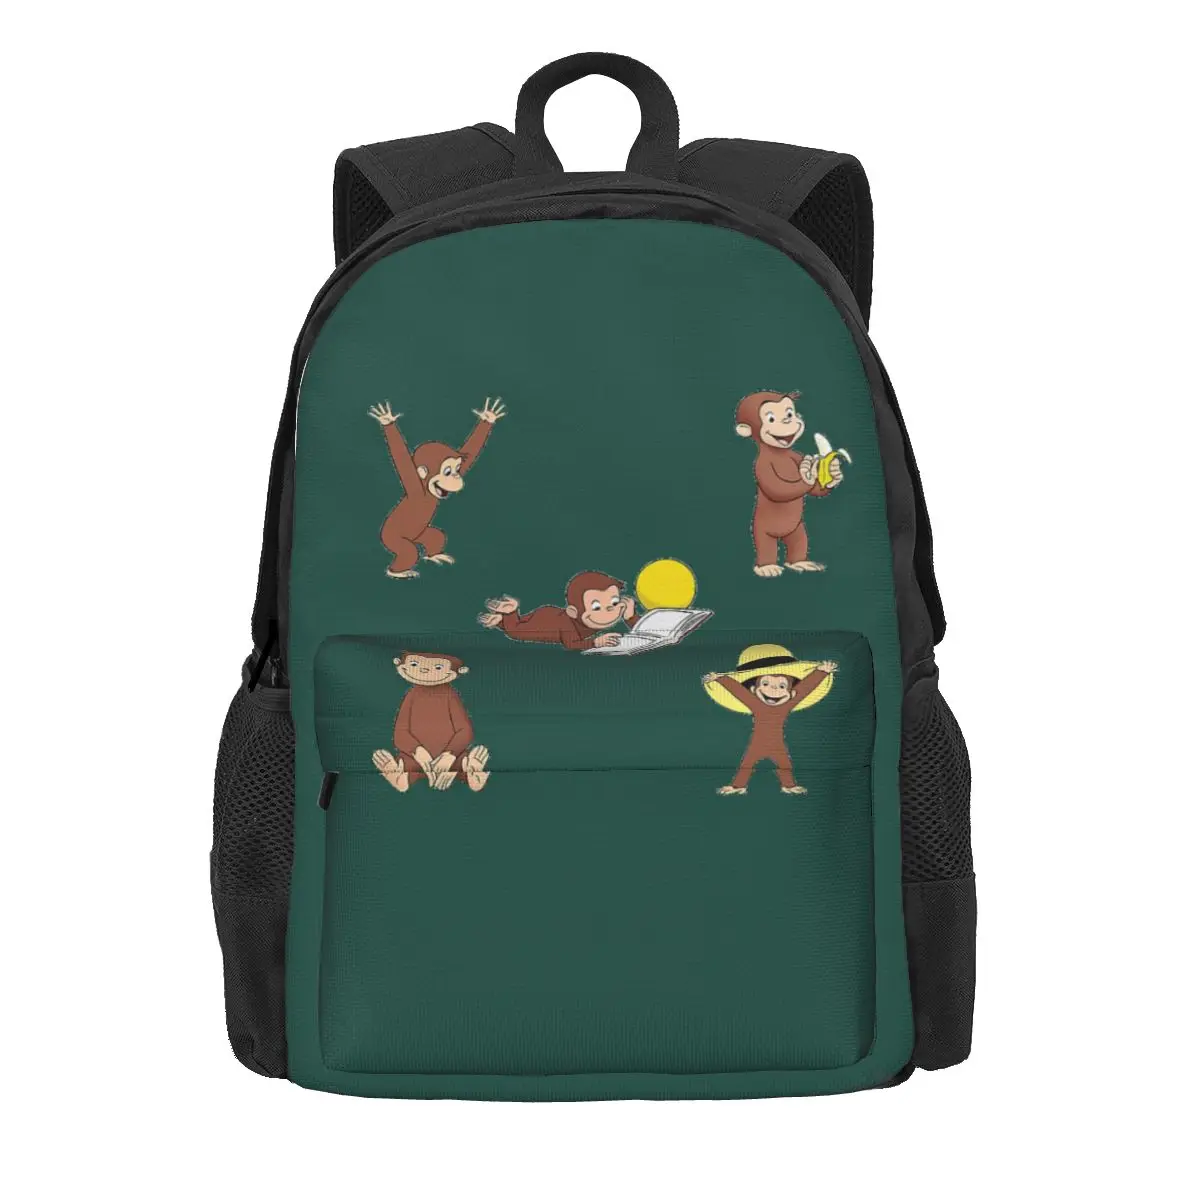 

Рюкзак для детей с изображением любопытной обезьяны Джордж, школьные ранцы для студентов, детский мультяшный ранец для ноутбука, сумка на плечо